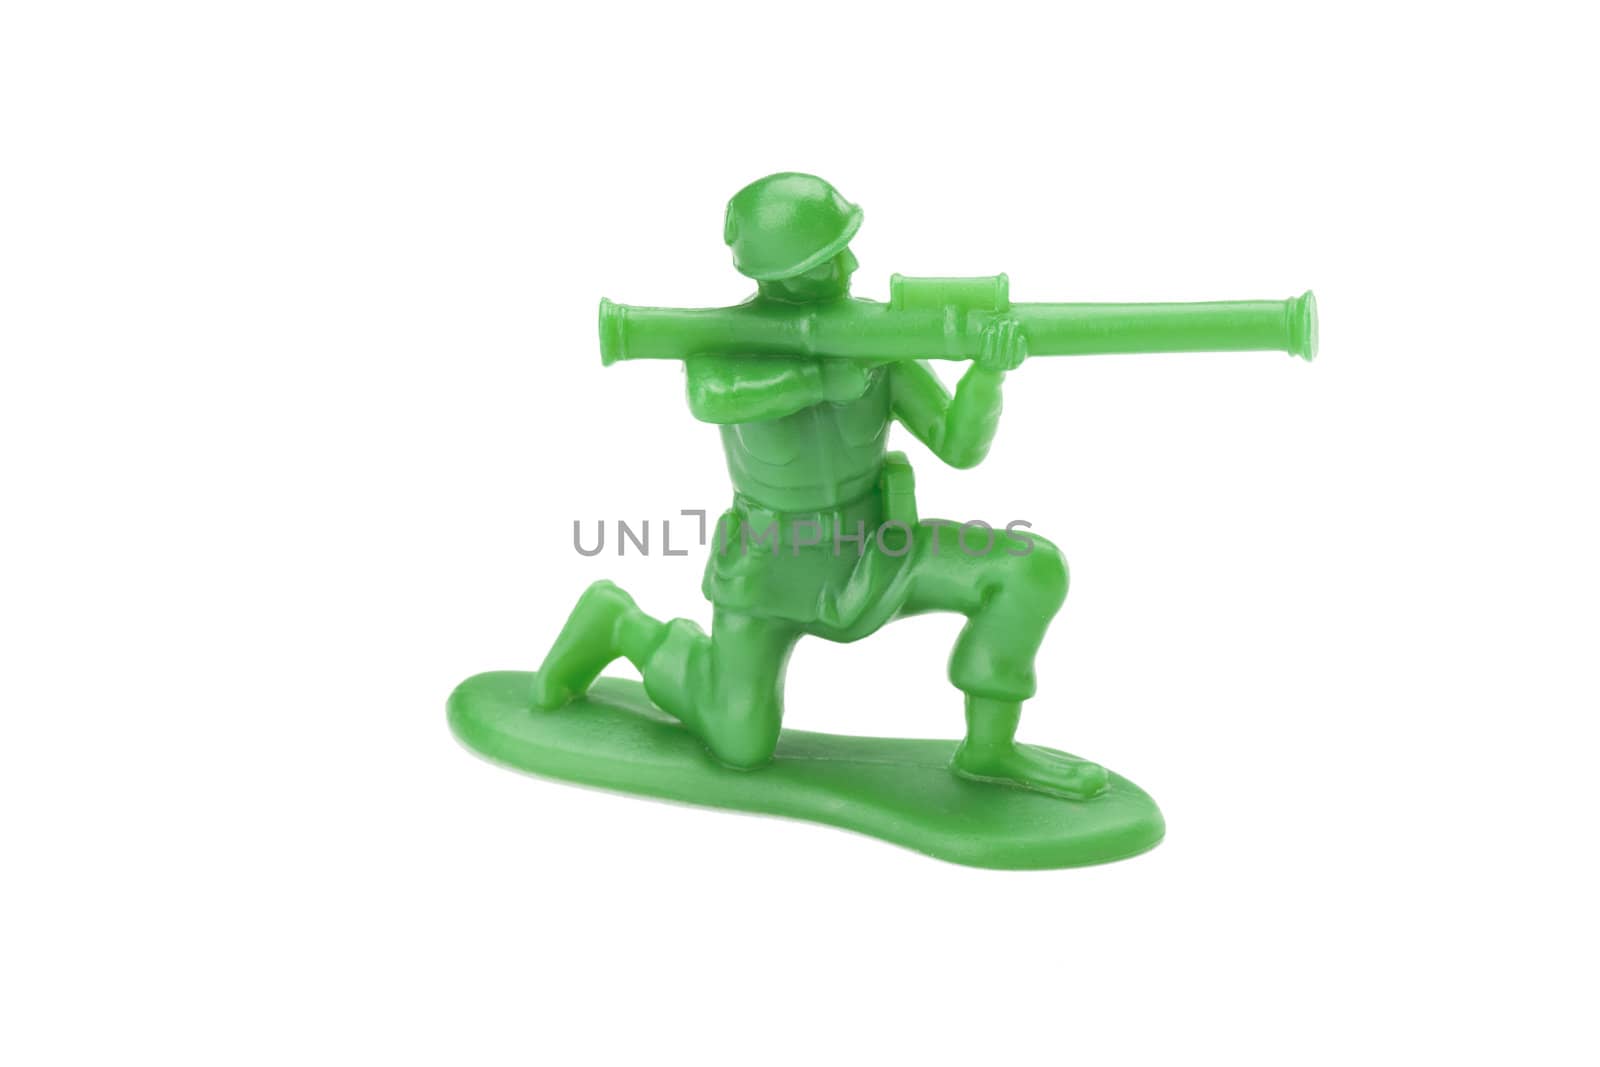 kneeling toy soldier by rusuangela